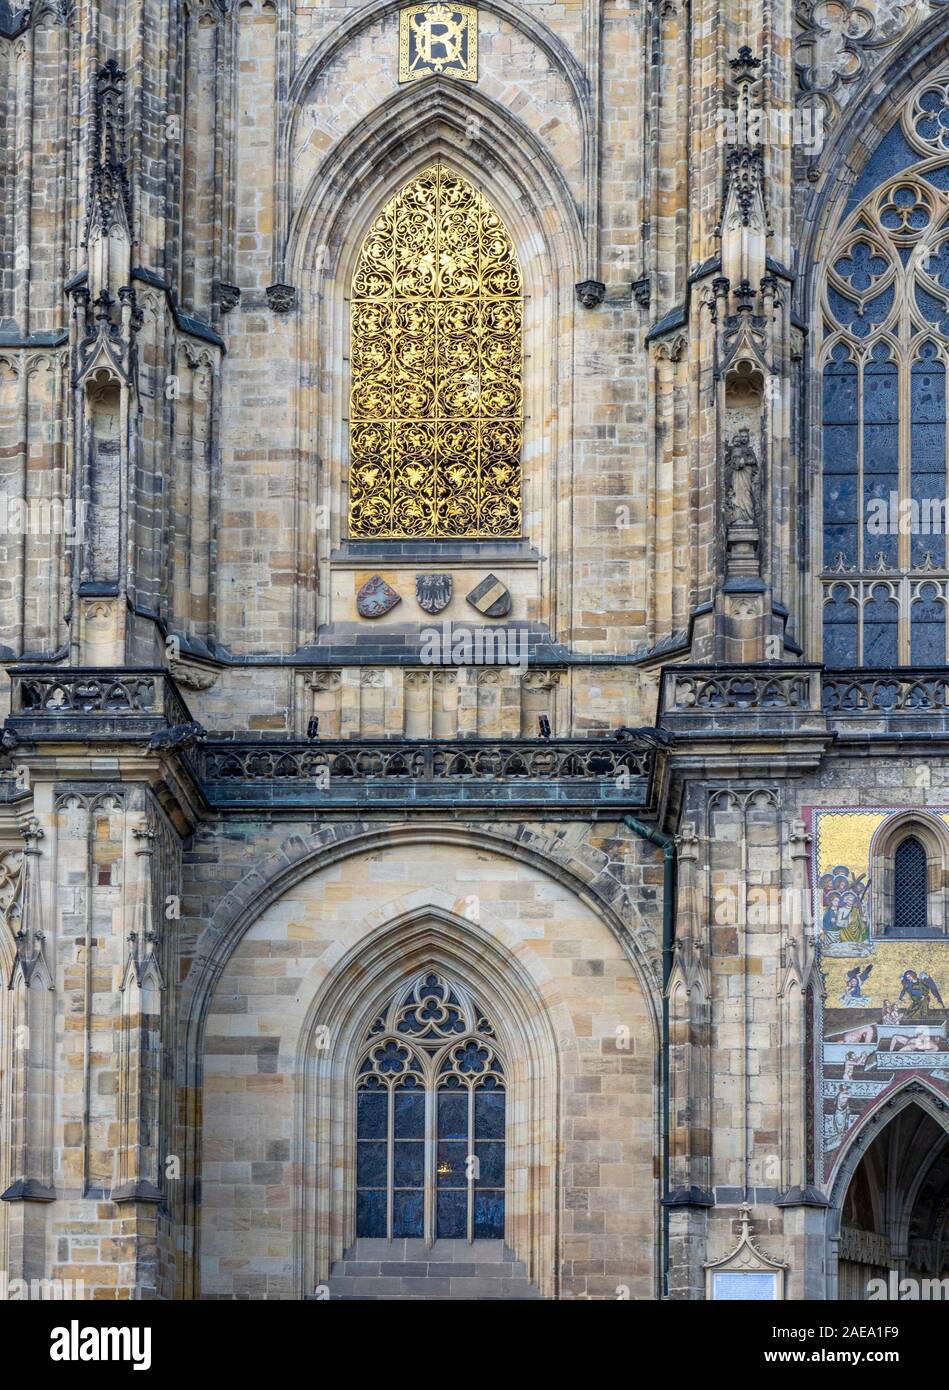 Goldvergoldung am Fuße des Großen Südturms der gotischen St. Veits-Kathedrale in der Prager Burg Komplex Prag Tschechische Republik. Stockfoto